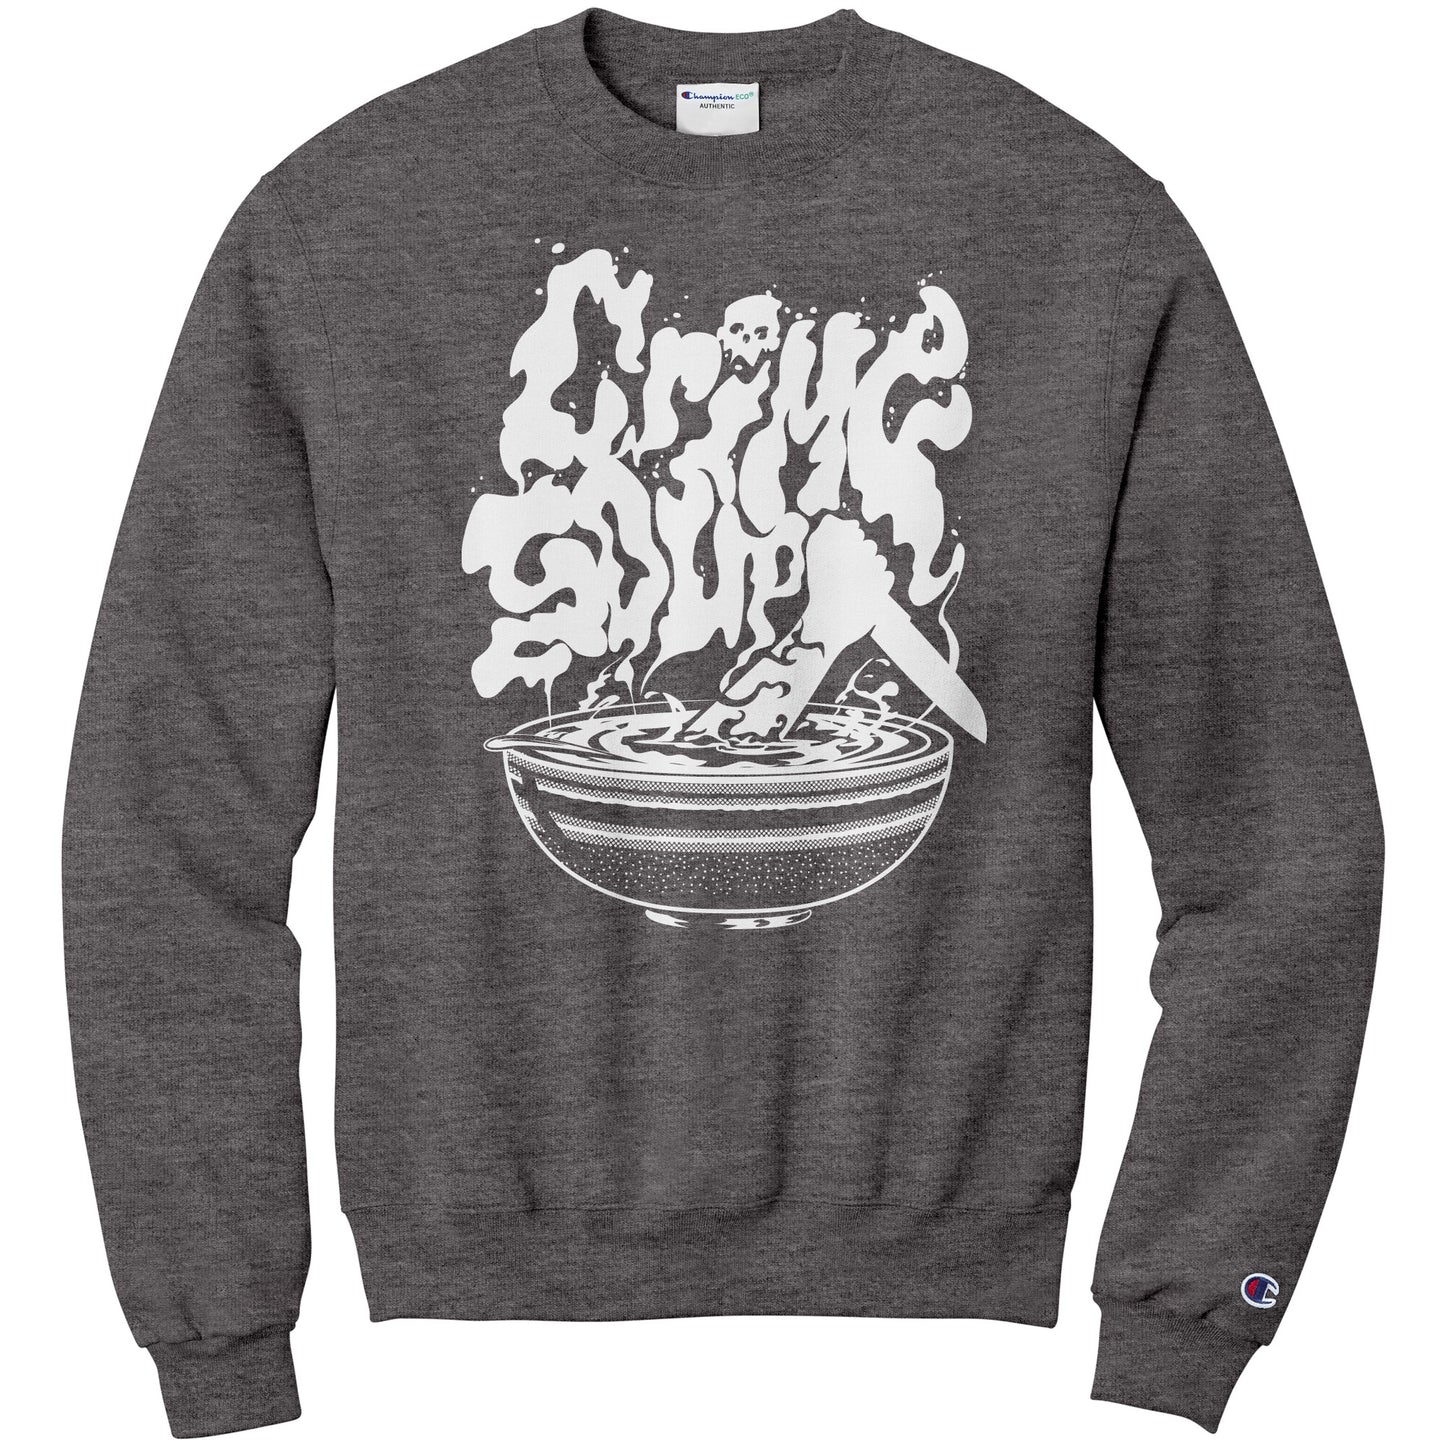 Crime Soup Sweatshirt